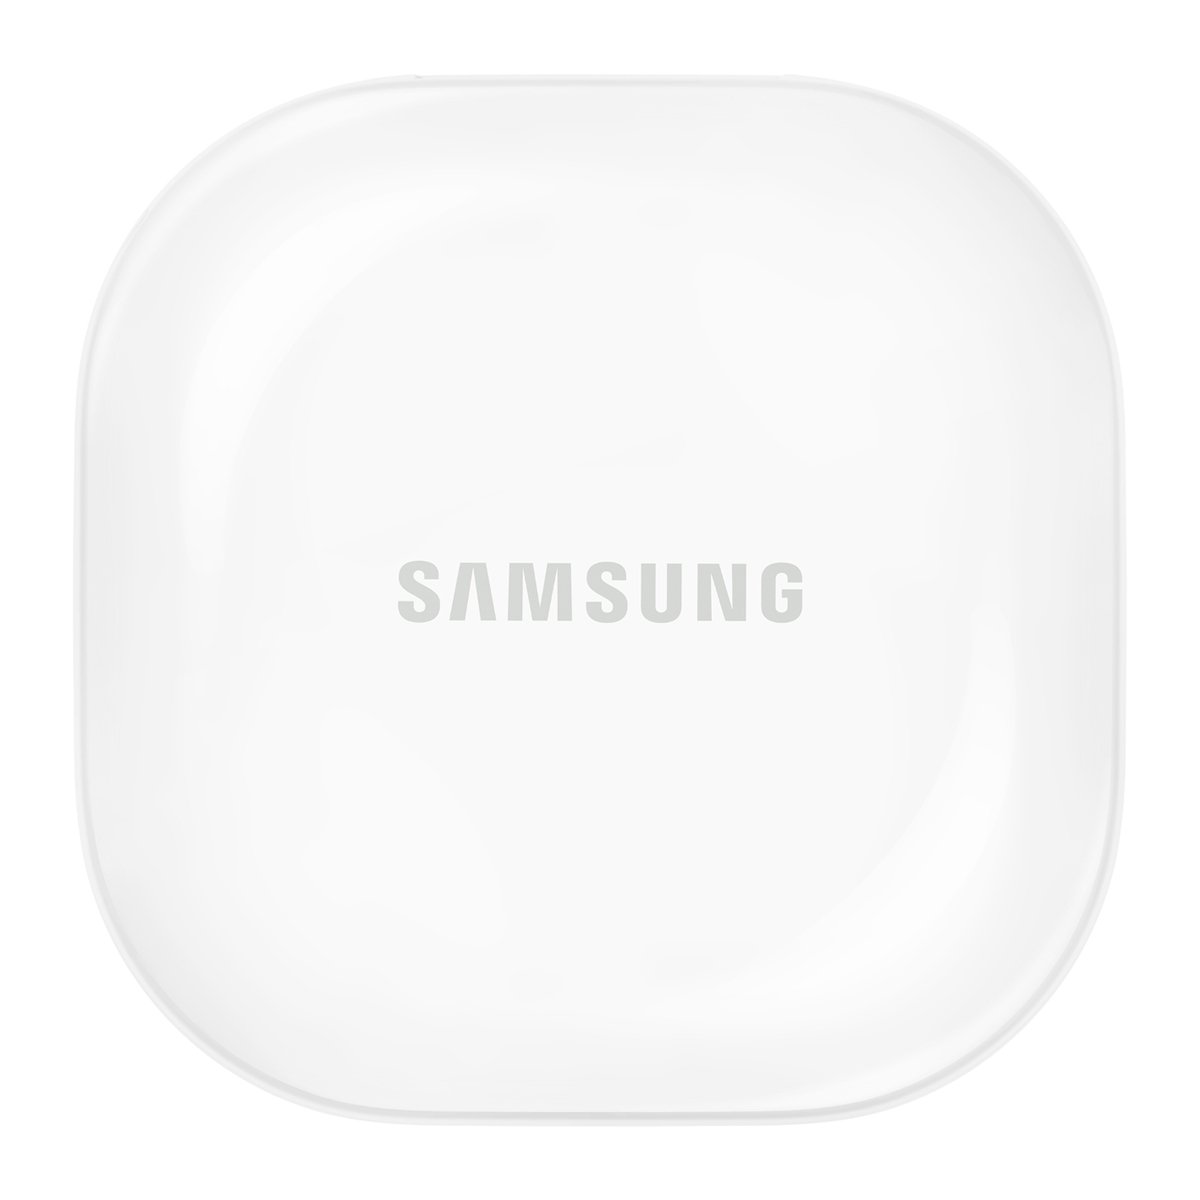 Samsung Galaxy Buds 2 Wireless Earbuds R177NZKA Graphite